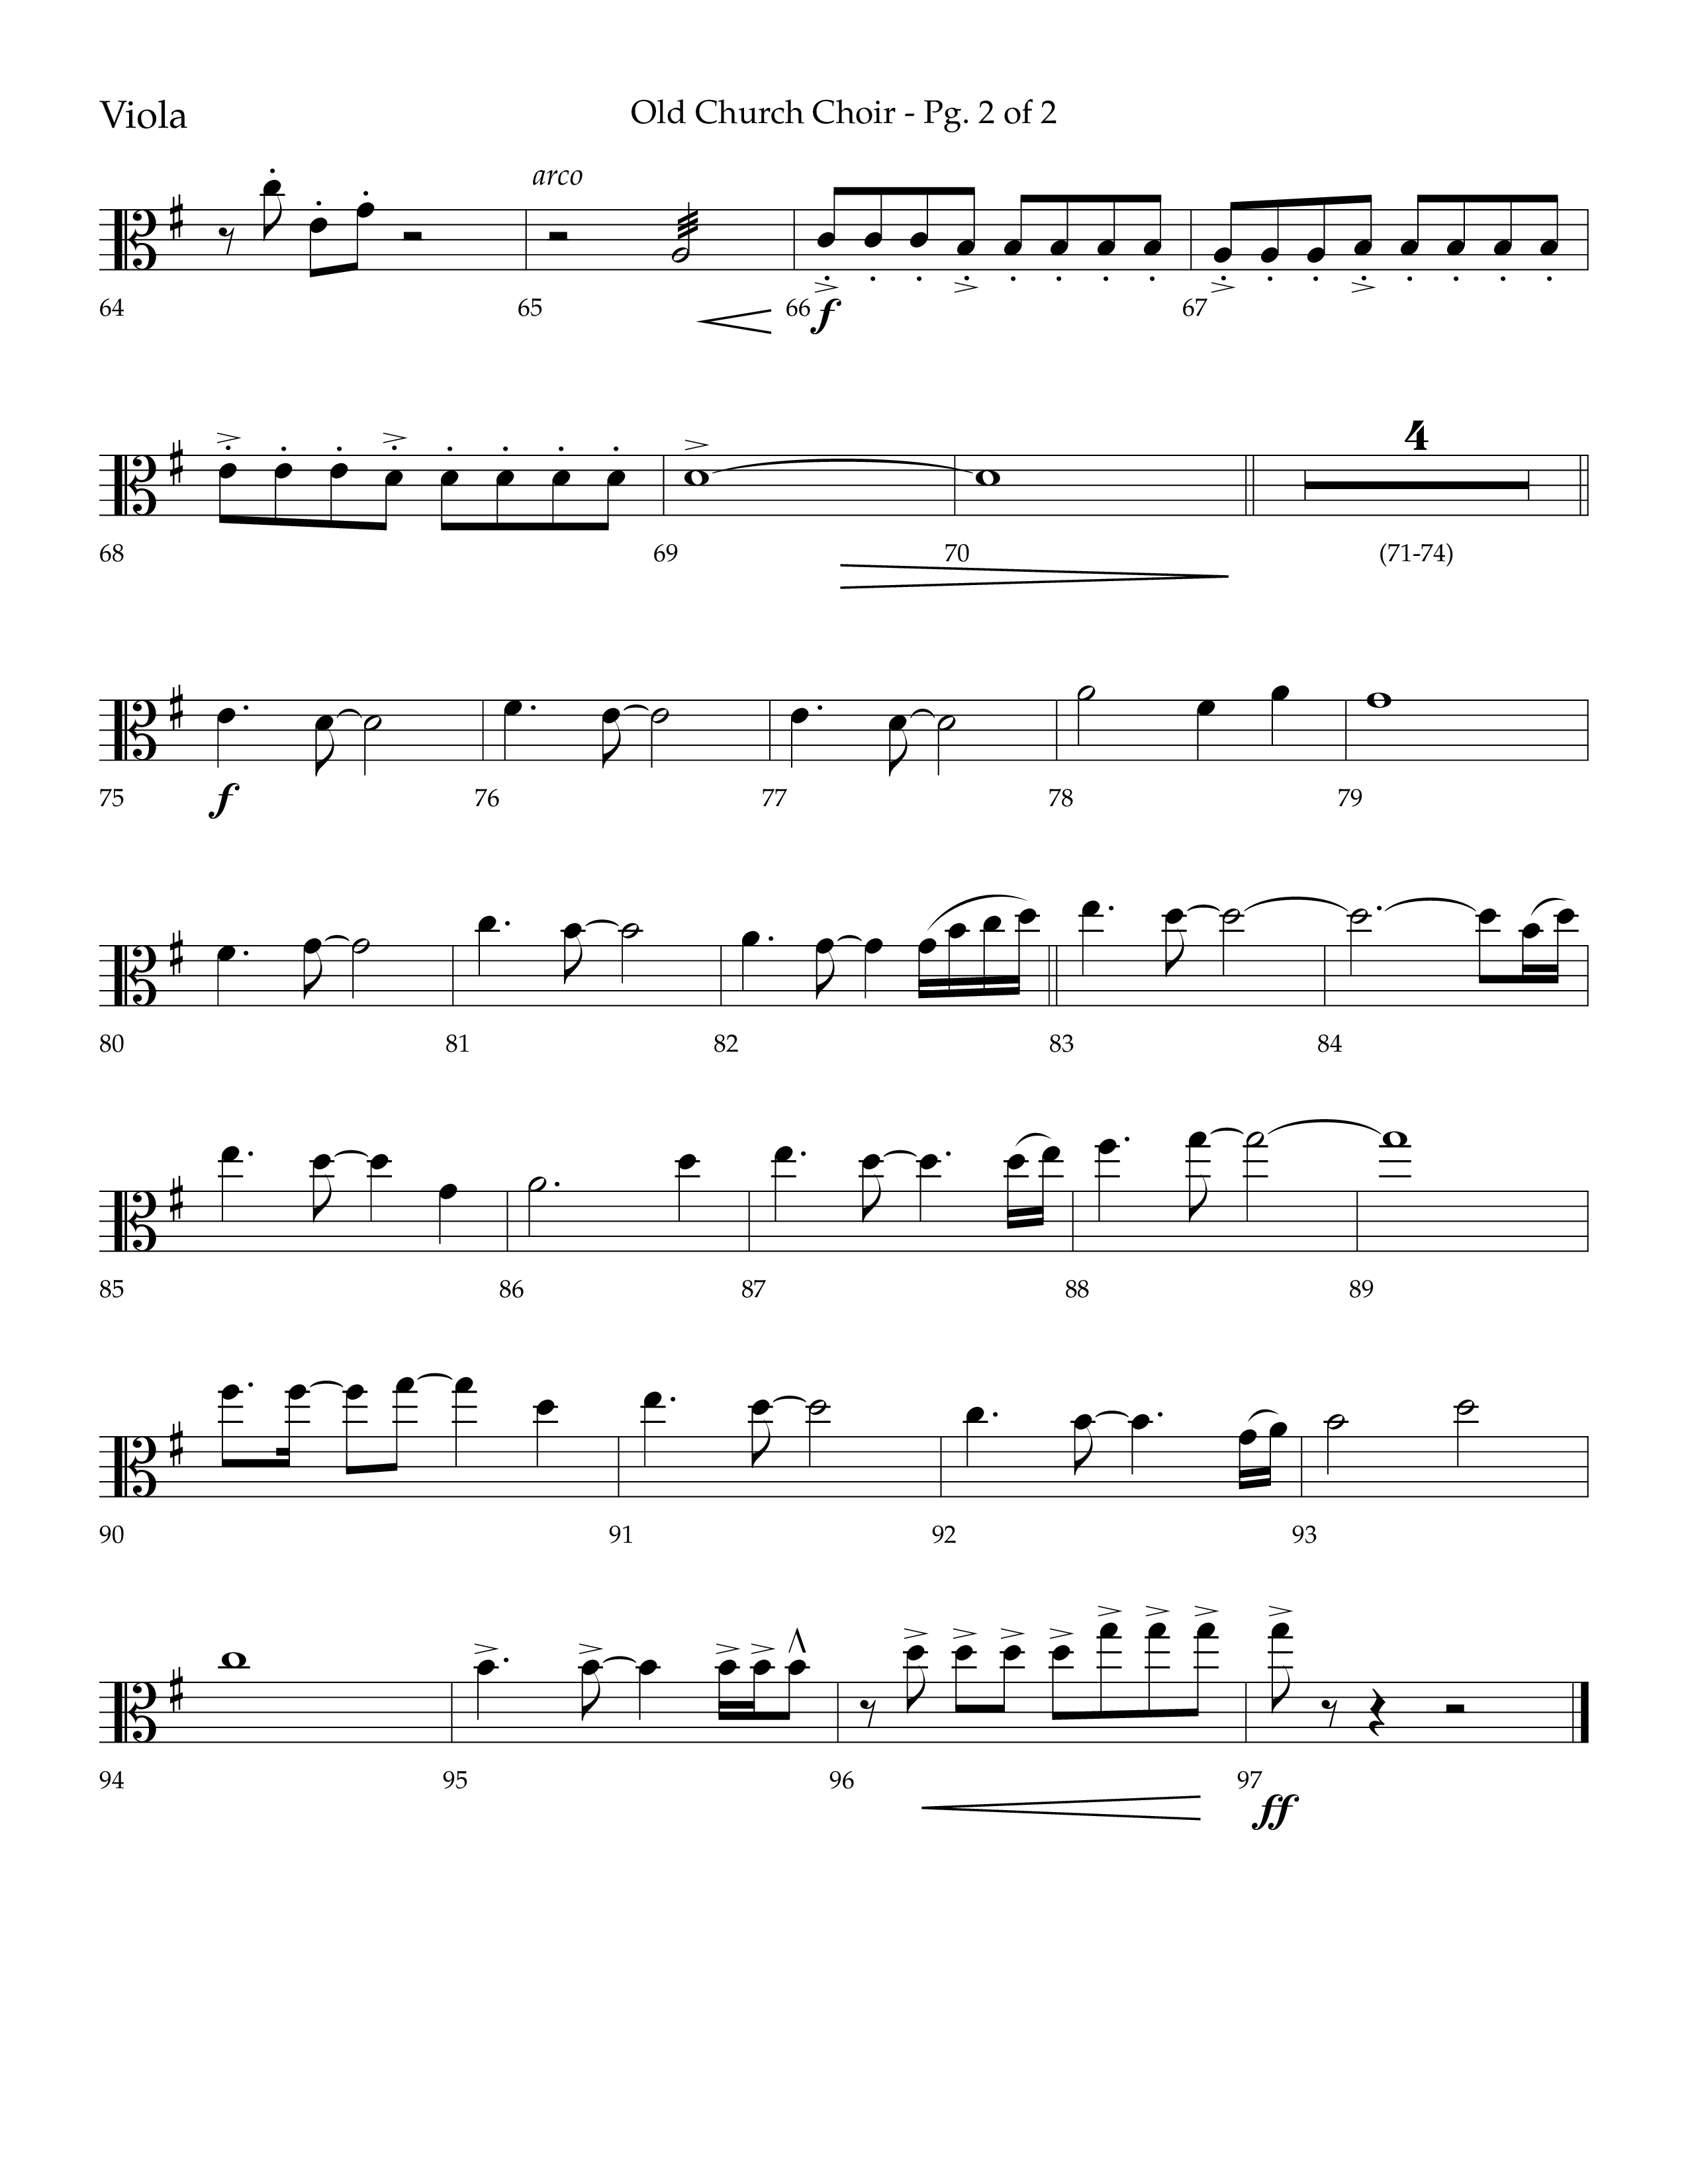 Old Church Choir (Choral Anthem SATB) Viola (Lifeway Choral / Arr. Ken Barker / Arr. Craig Adams / Arr. Danny Zaloudik)